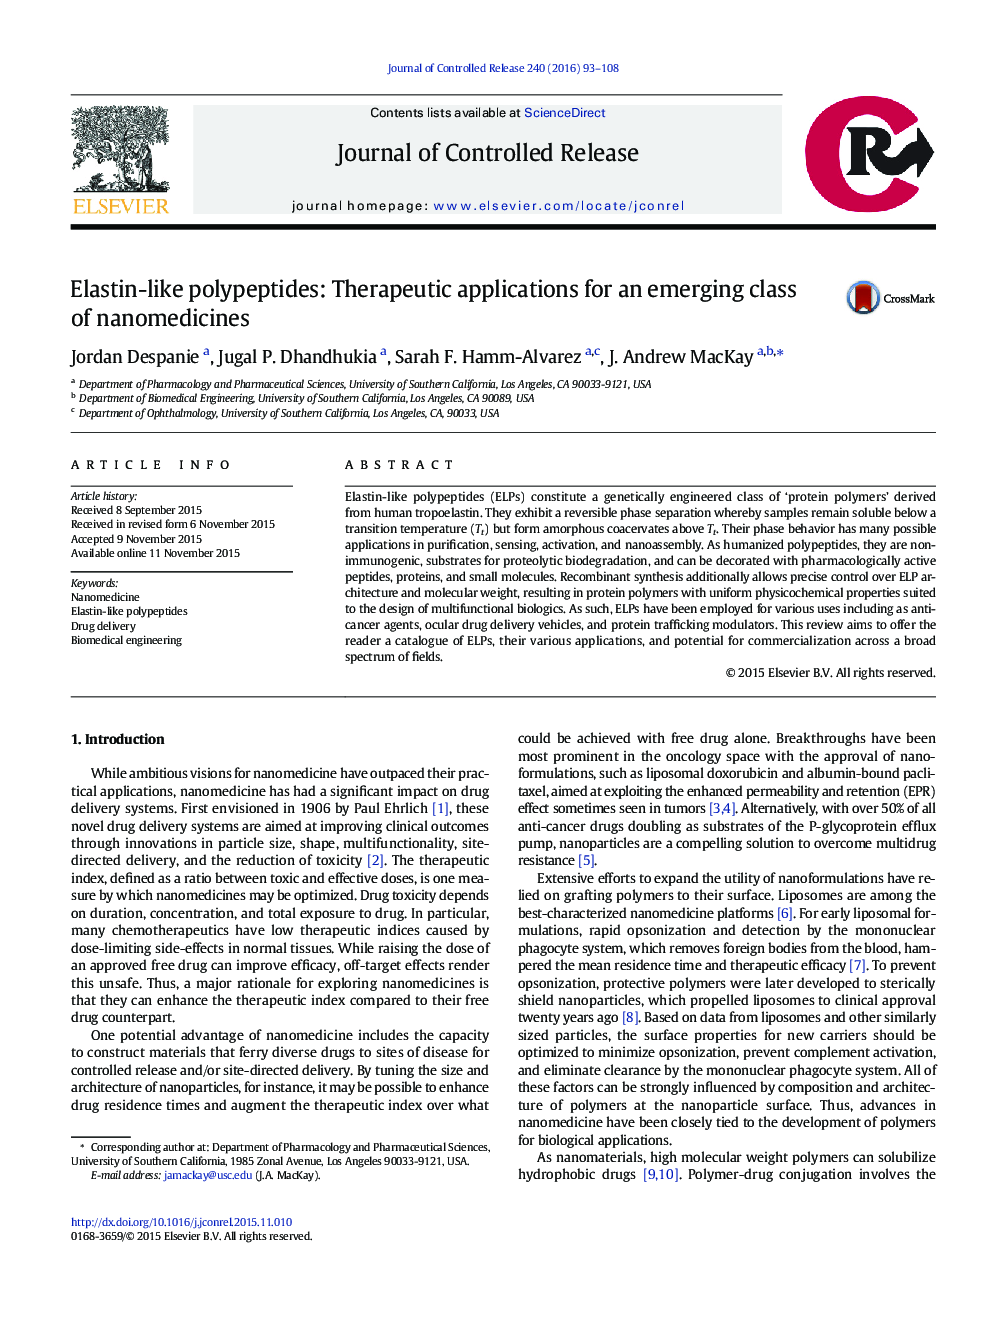 پلی پپتید های مشابه الاستین: کاربرد های درمانی برای یک کلاس در حال ظهور نانومواد 